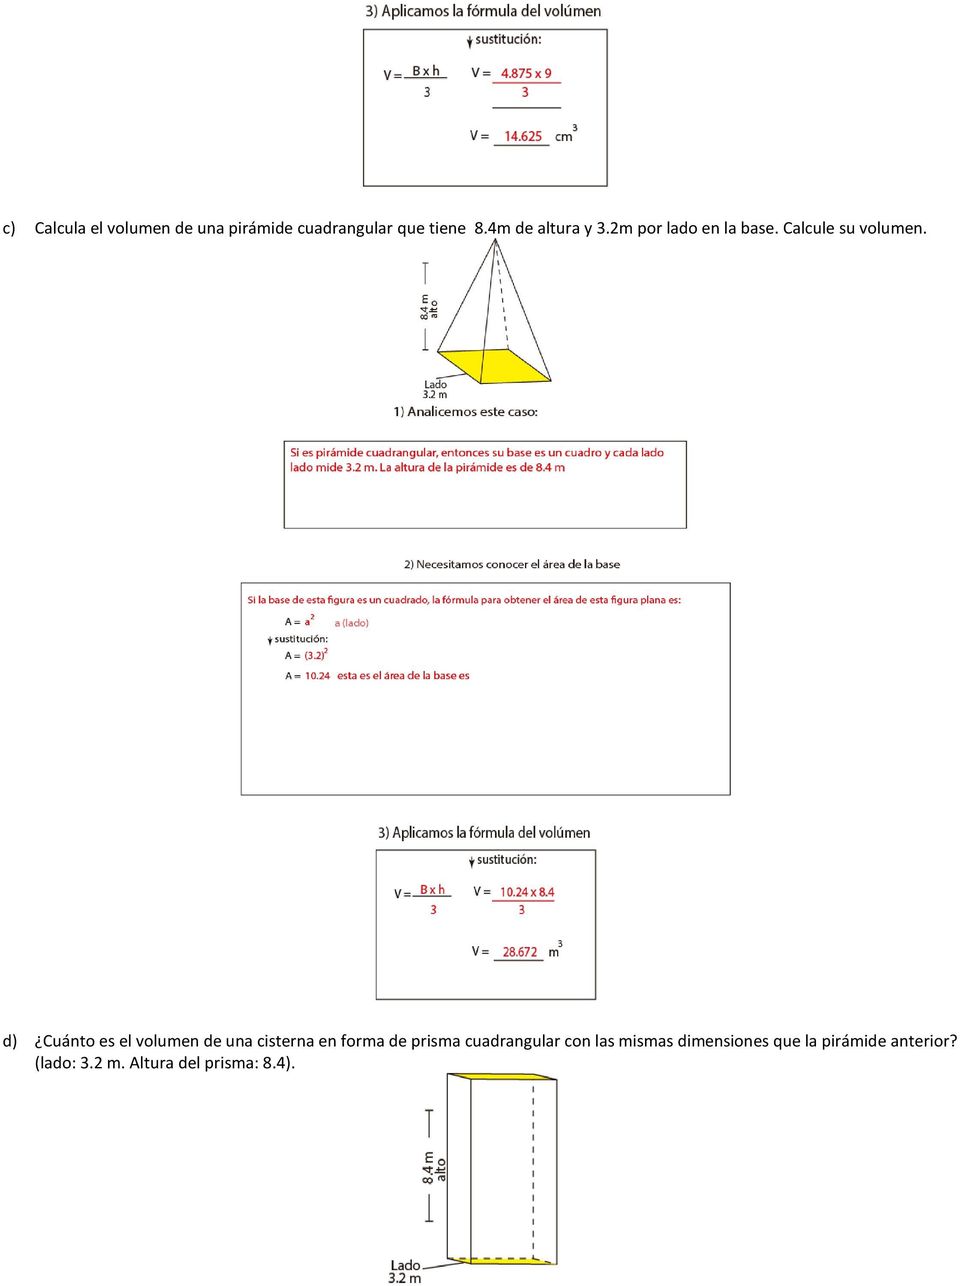 d) Cuánto es el volumen de una cisterna en forma de prisma cuadrangular